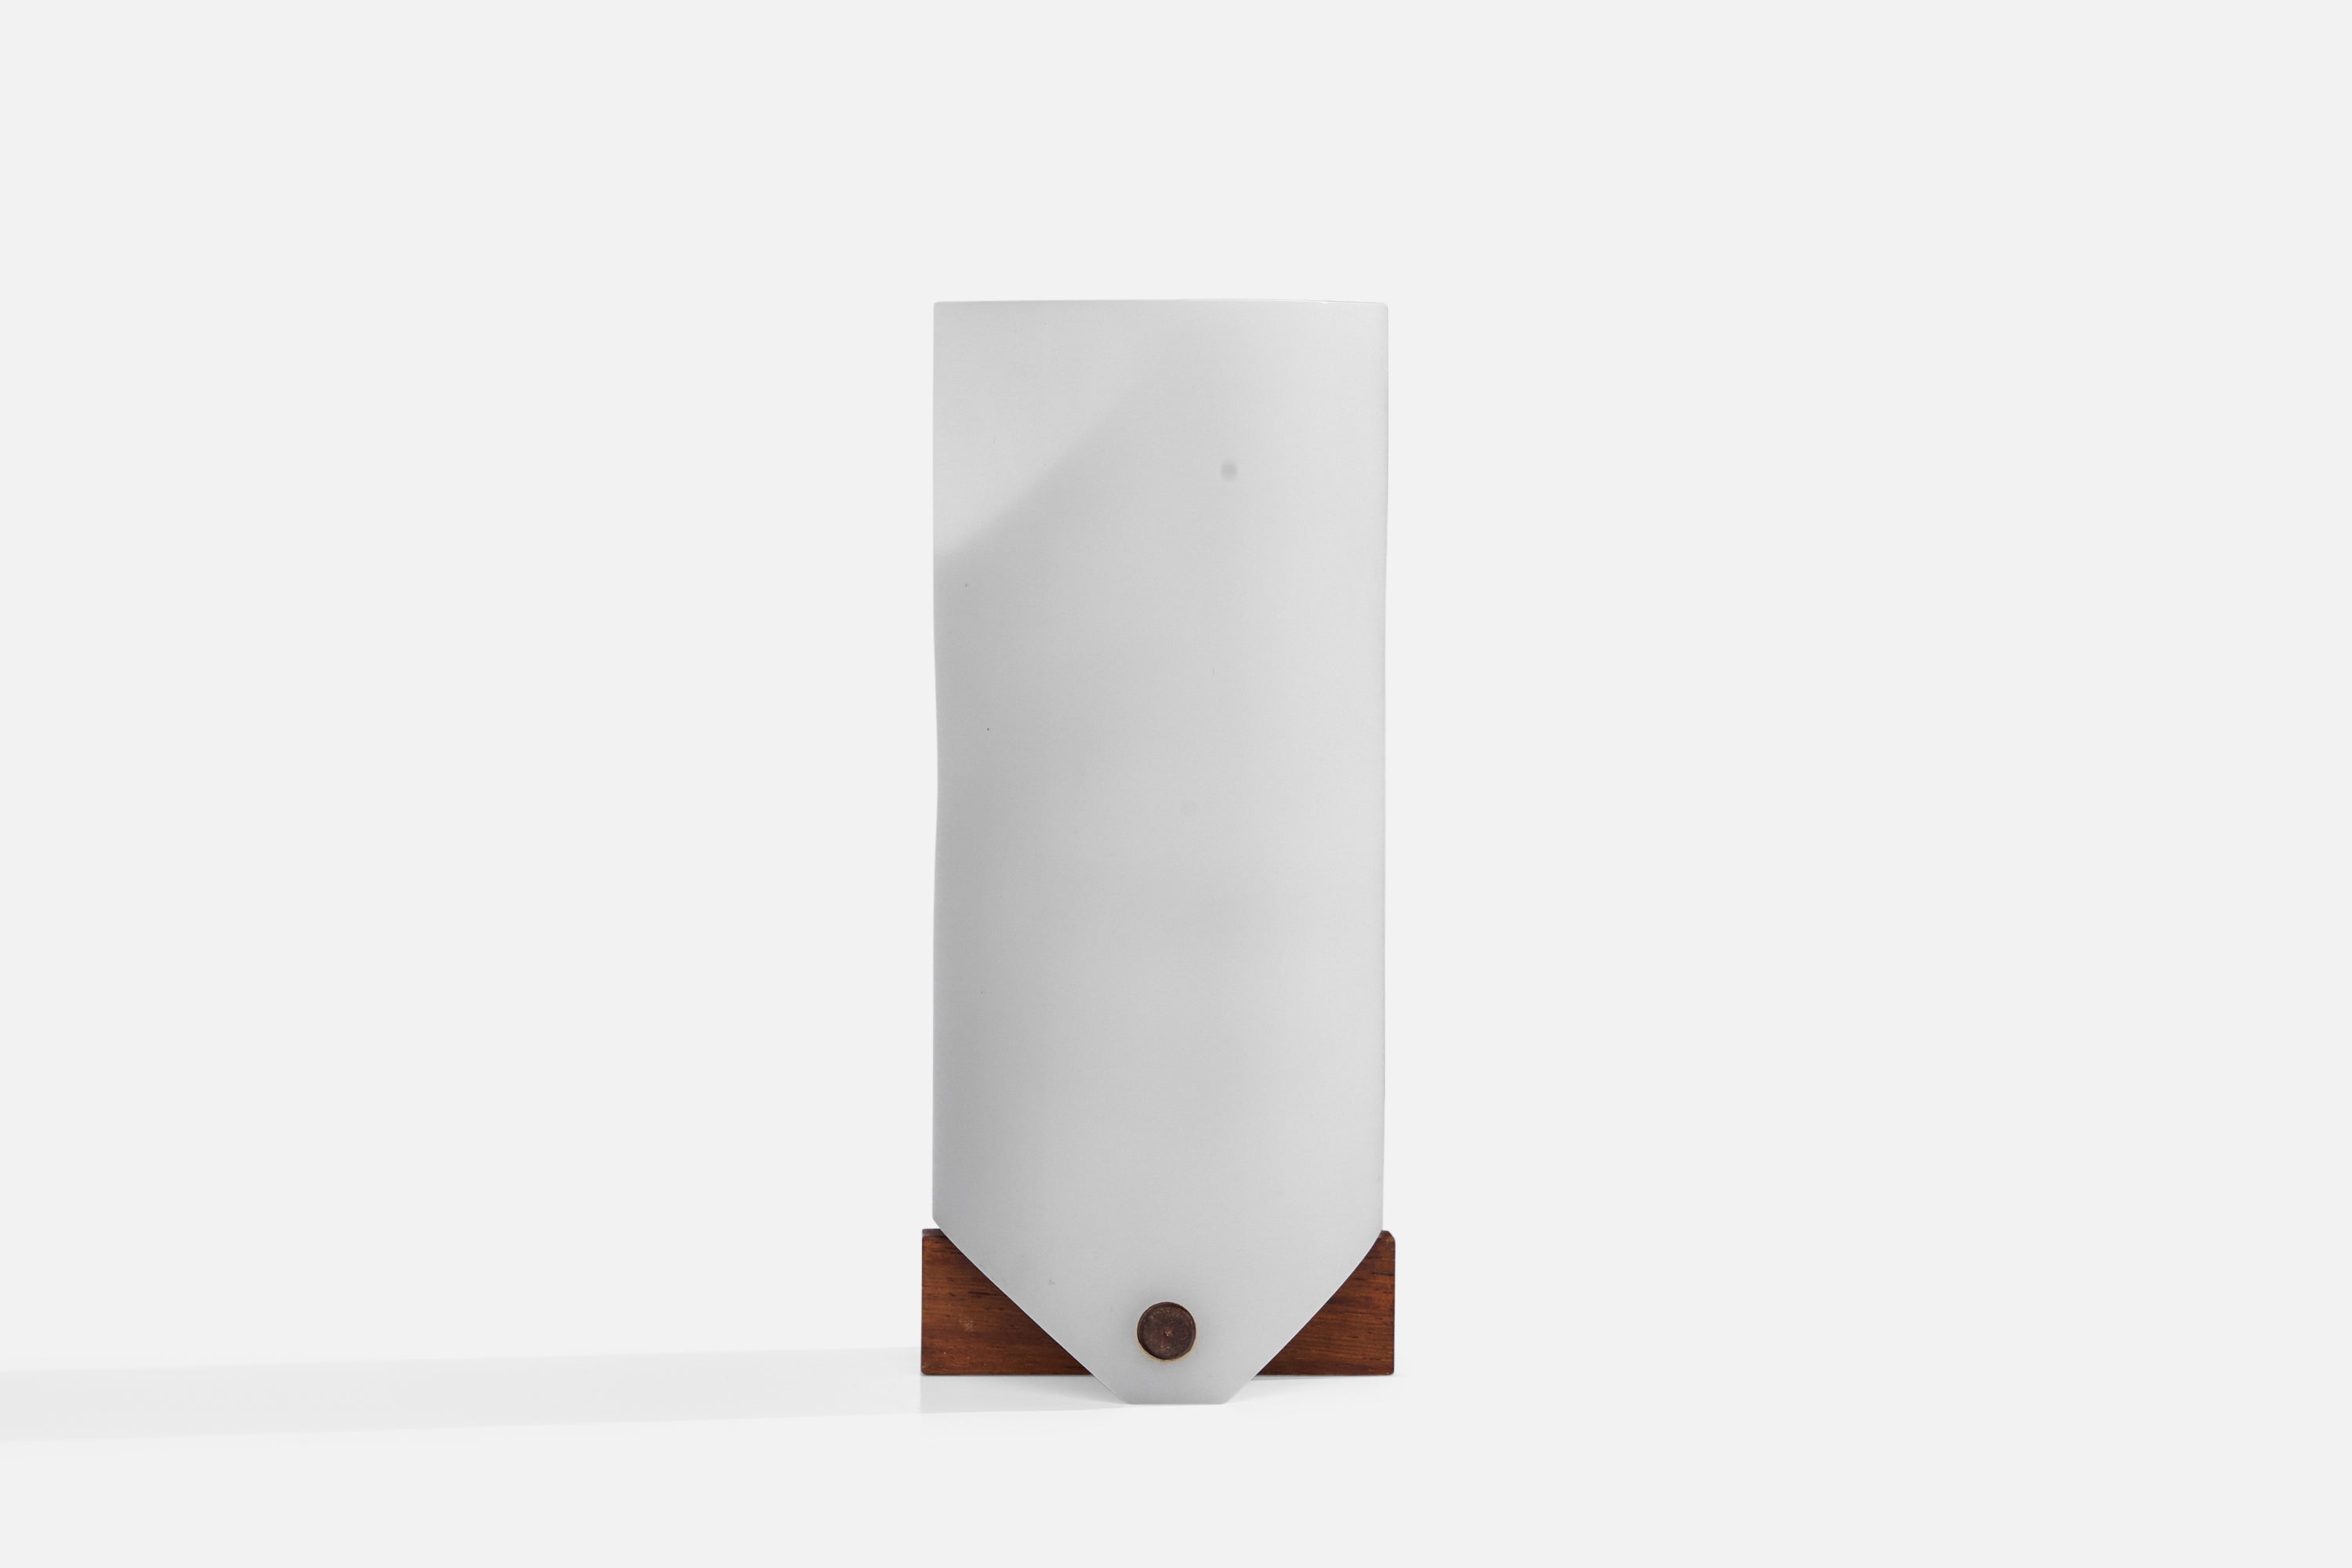 Eine Tischleuchte aus Teakholz und weißem Acryl, entworfen und hergestellt in Schweden, 1960er Jahre.

Gesamtabmessungen (Zoll): 7,5